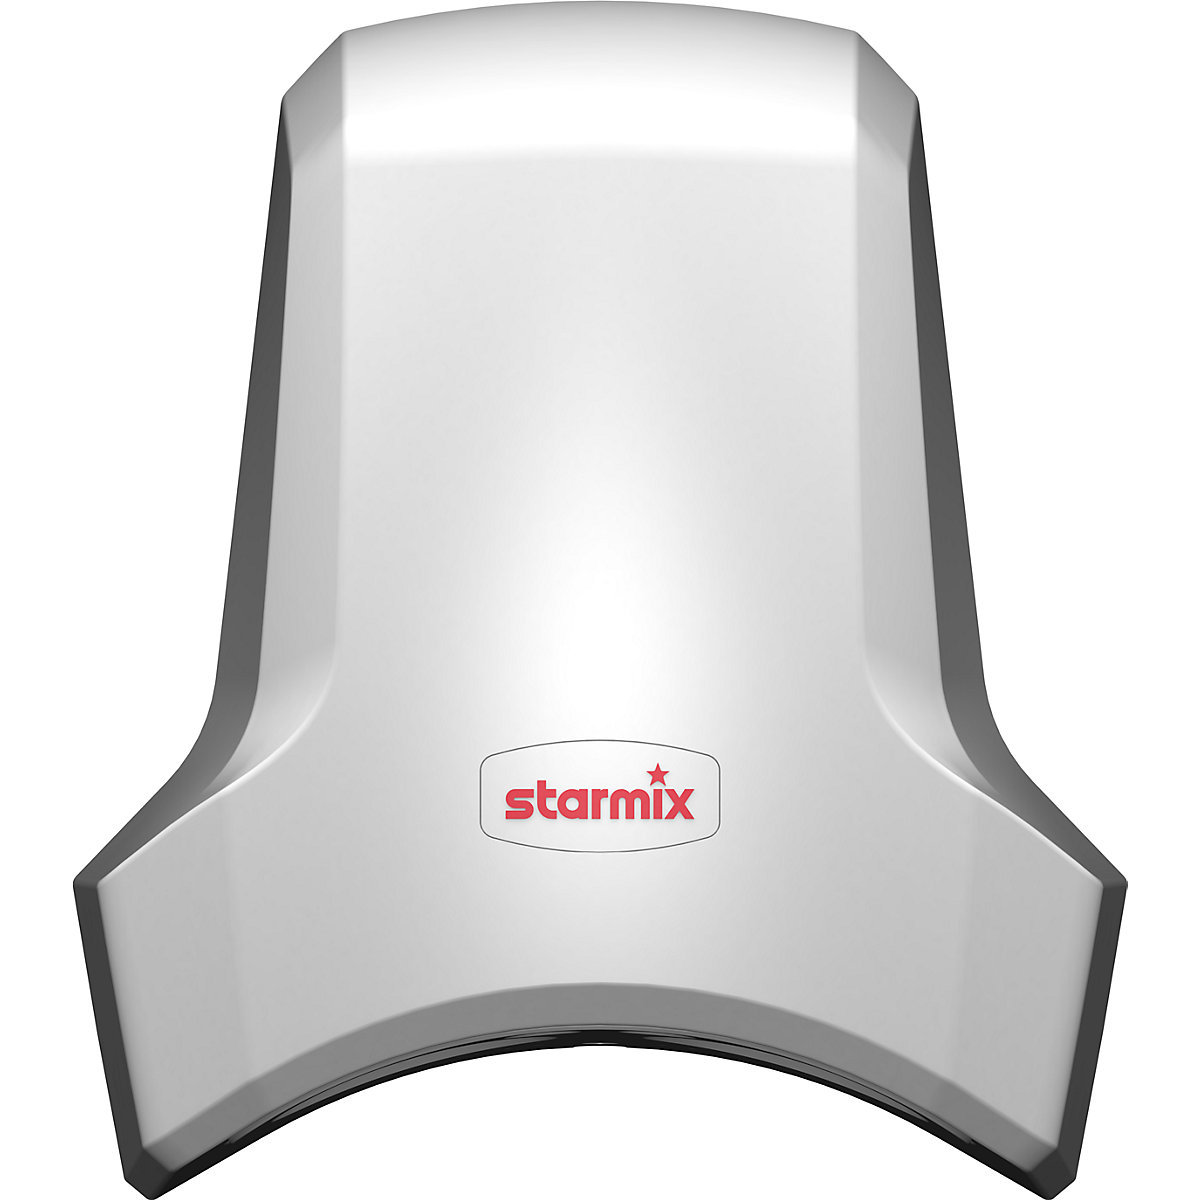 Händetrockner Airstar T-C1 starmix, 17 s Trocknungszeit, weiß, HxBxT 304 x 268 x 182 mm-2